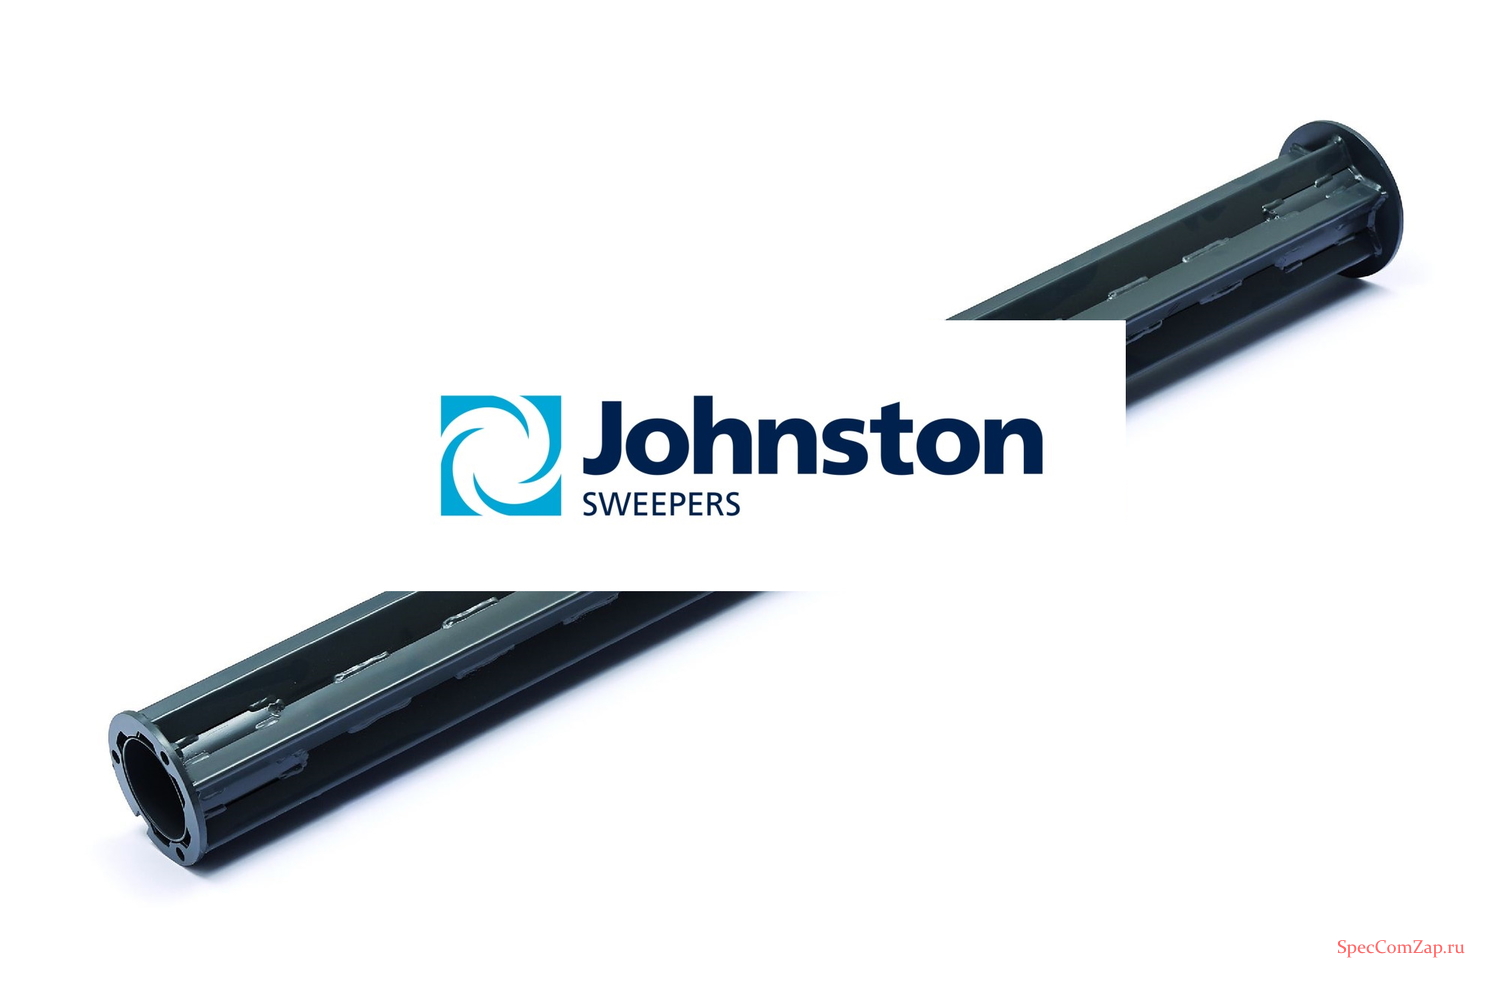 Каркас щетки центральной Johnston VT 650 651 283101-1